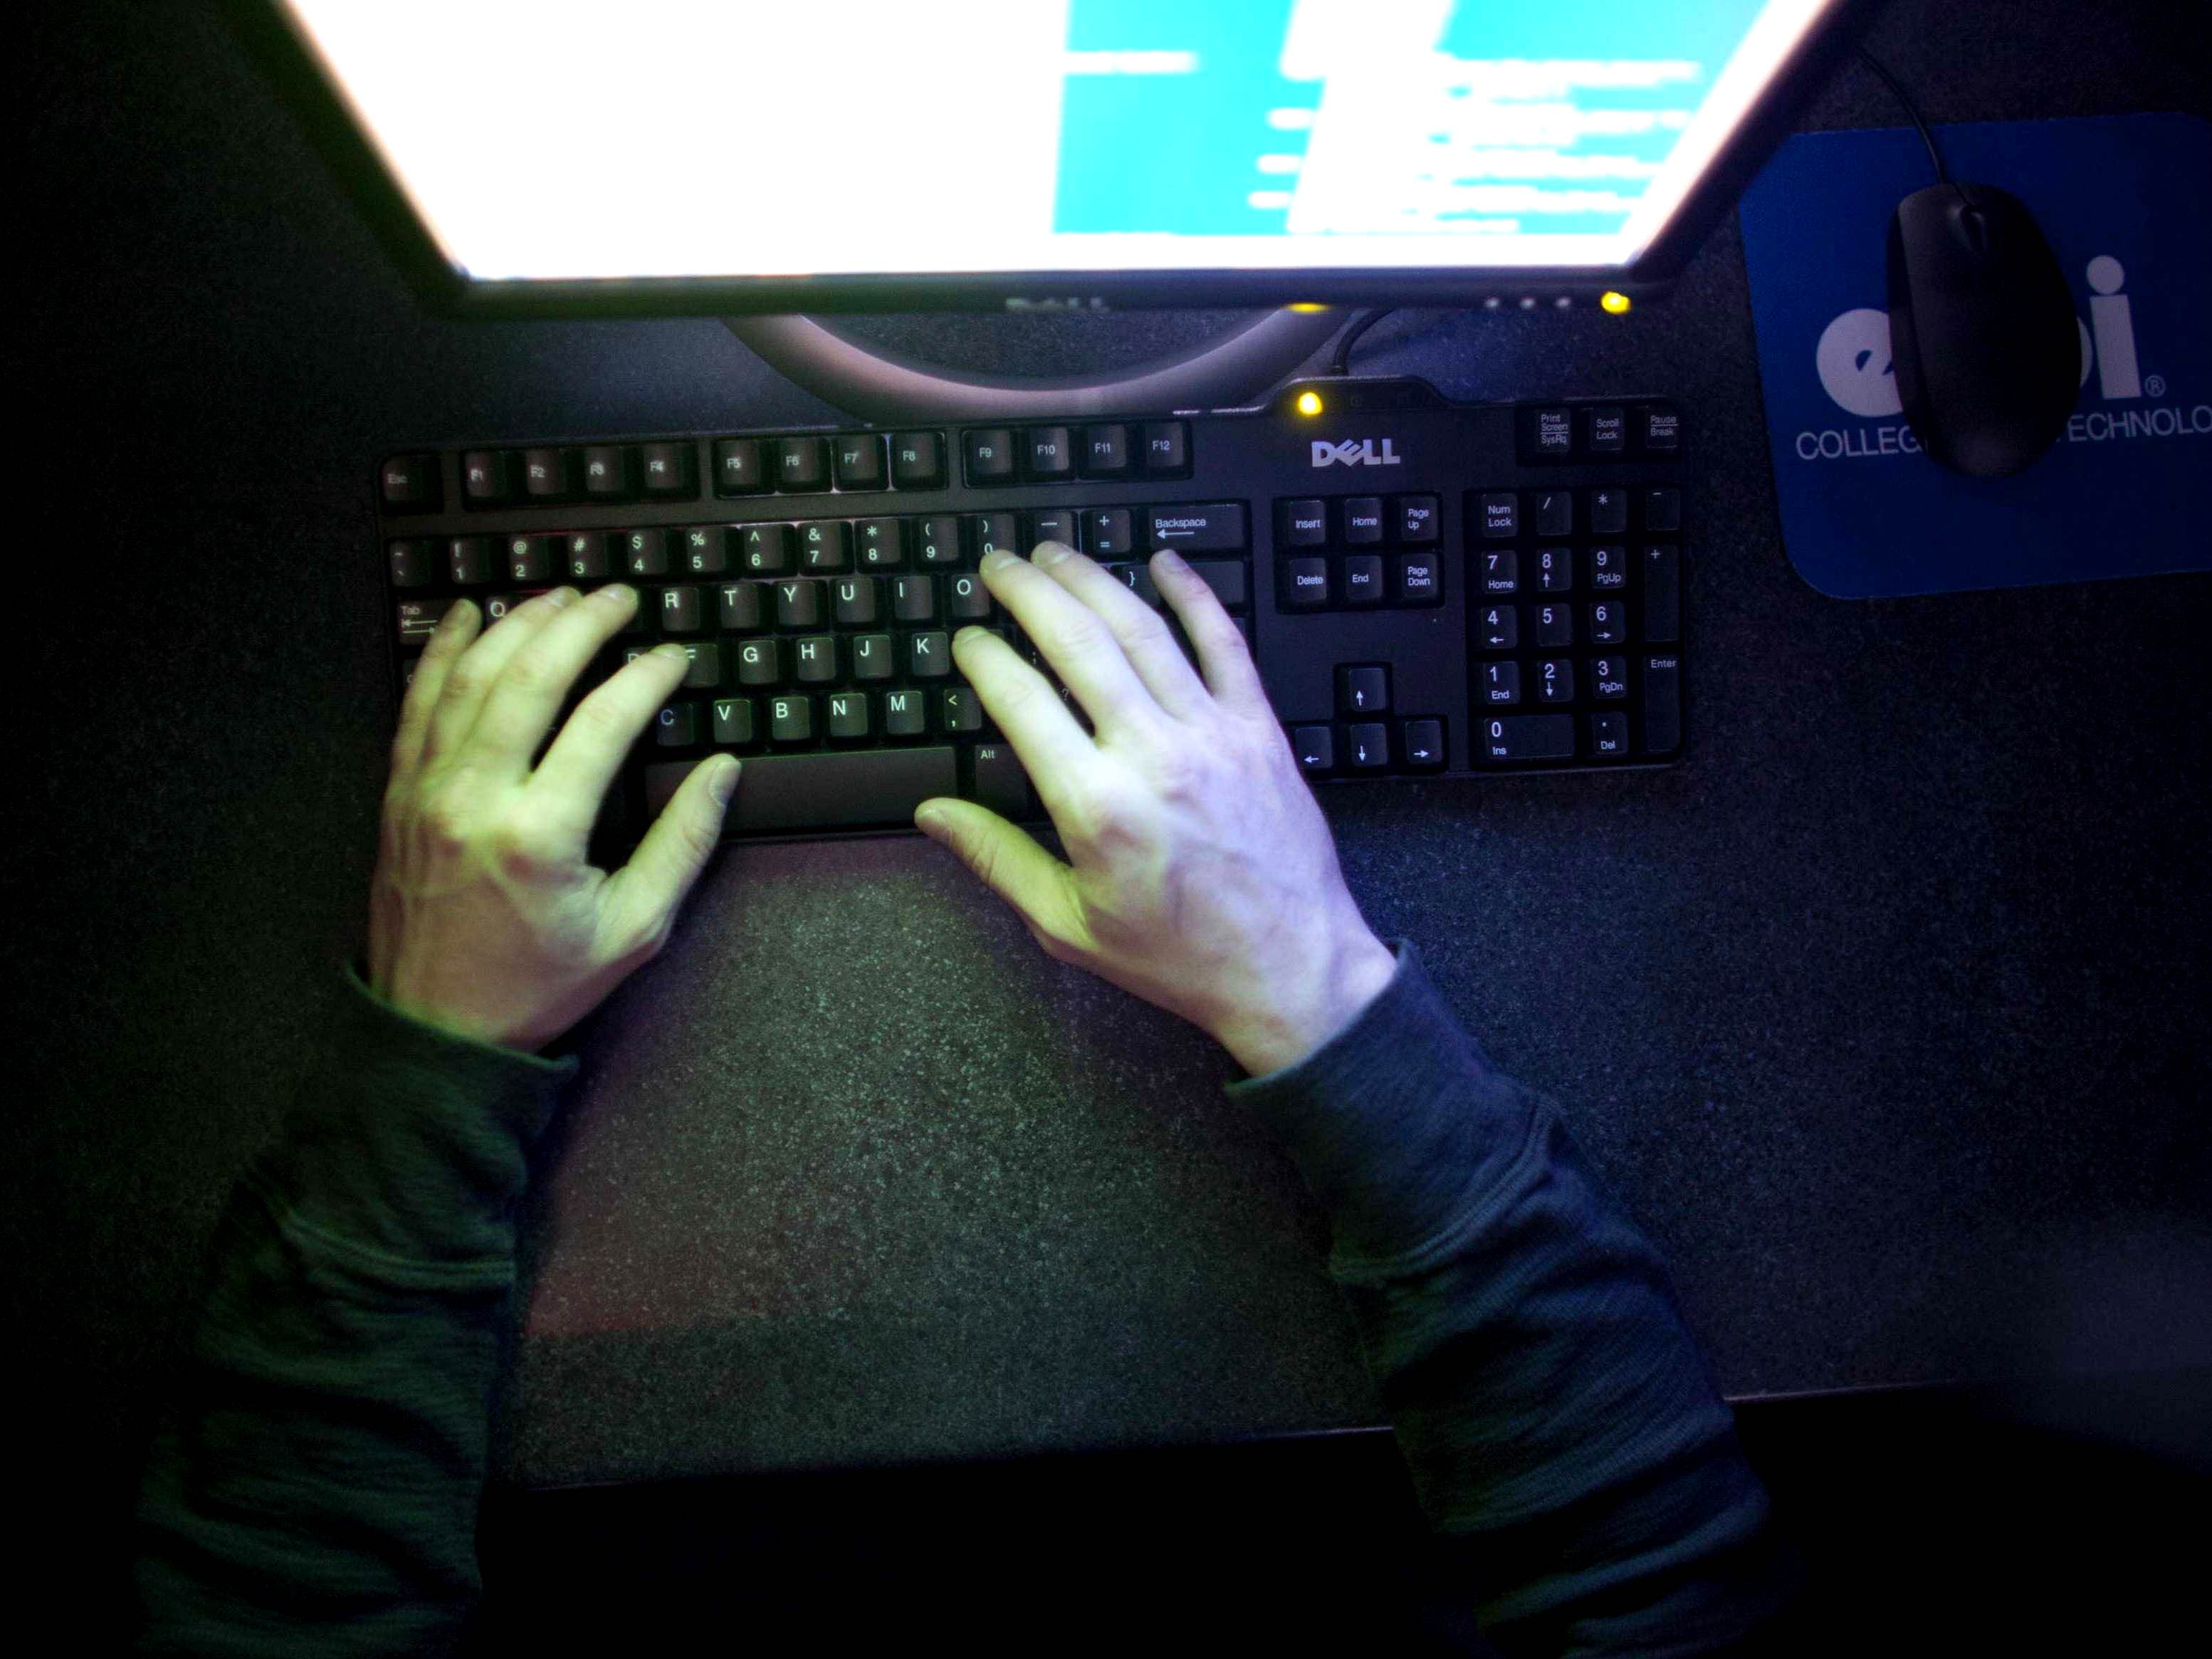 2019 से अब तब देश में साइबर अपराध की 6 लाख शिकायतें दर्ज की गईं: केंद्र